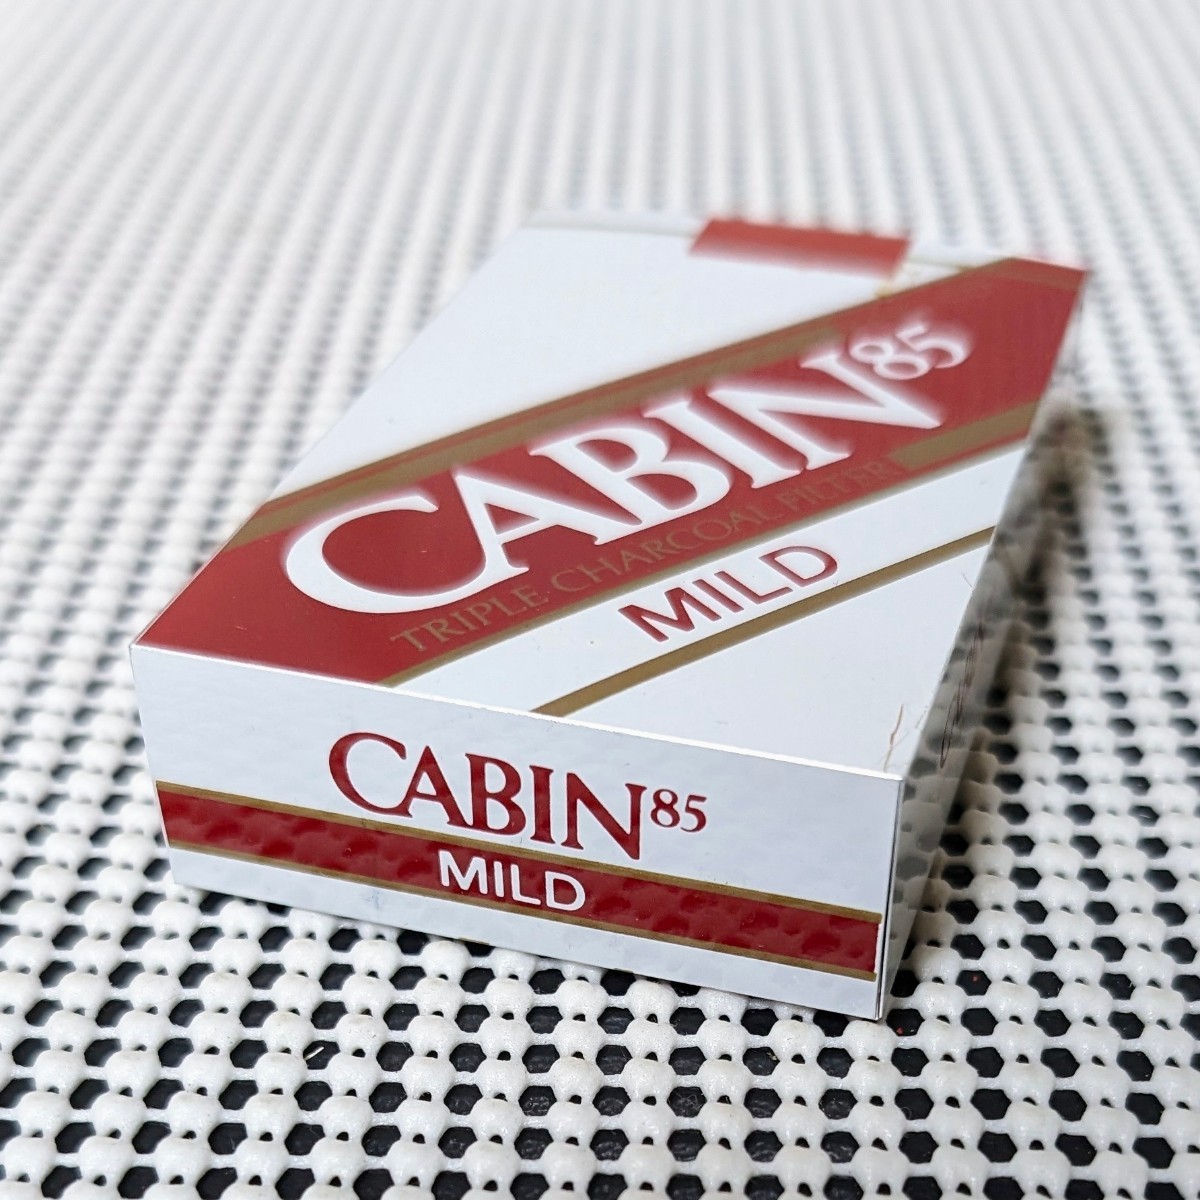  вся страна сигареты распродажа . такой же комплект . полосный .. сигареты упаковка модель образец сигареты сигареты CABIN 85 MILD кабина 85 mild образец муляж образец mok металлический 